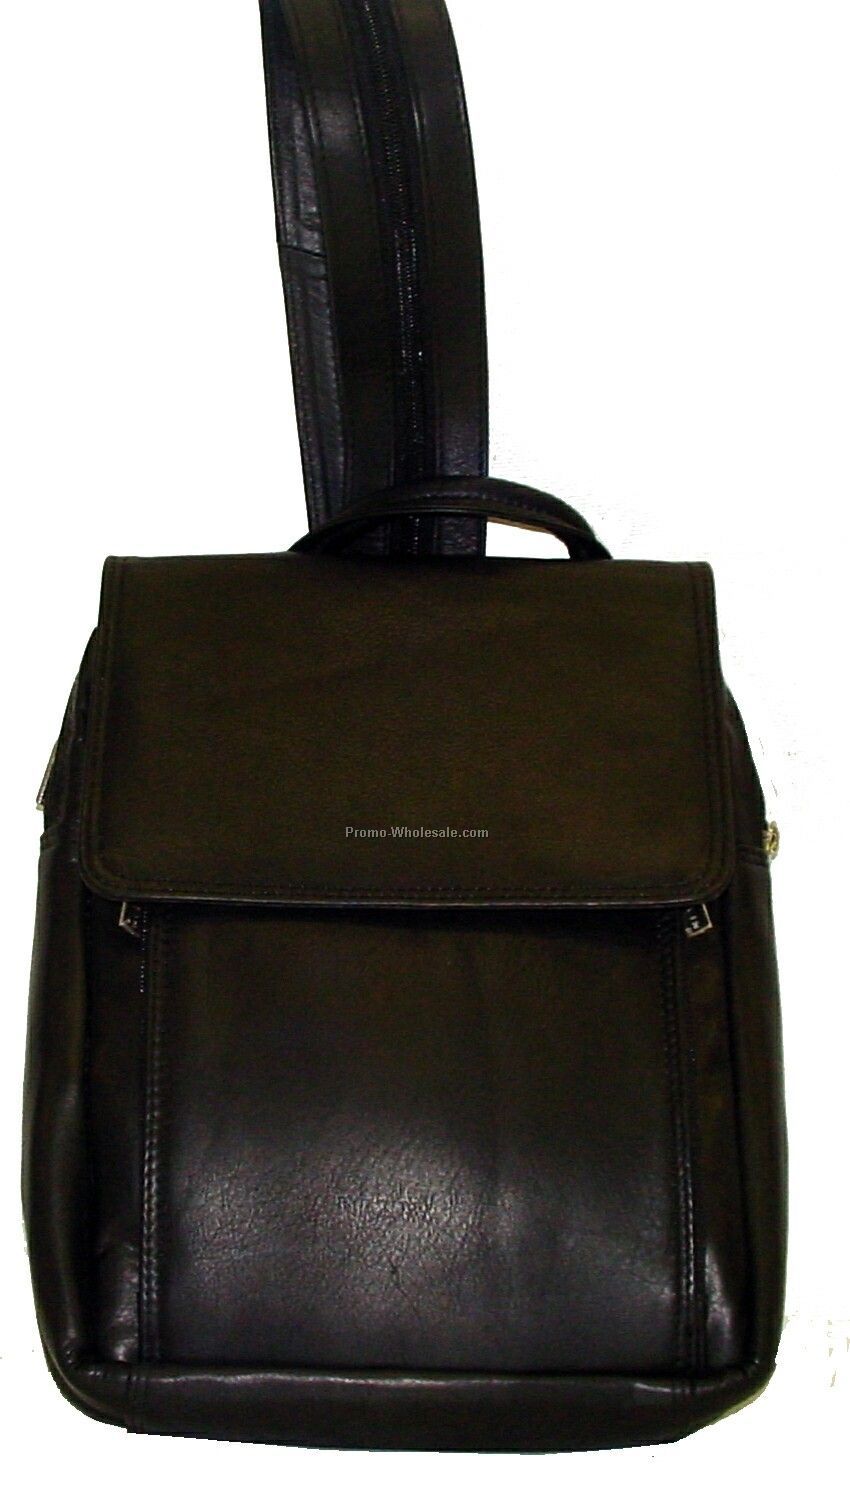 30cmx37cmx16cm Medium Brown Cowhide Annie's Day Pack Knapsack Backpack